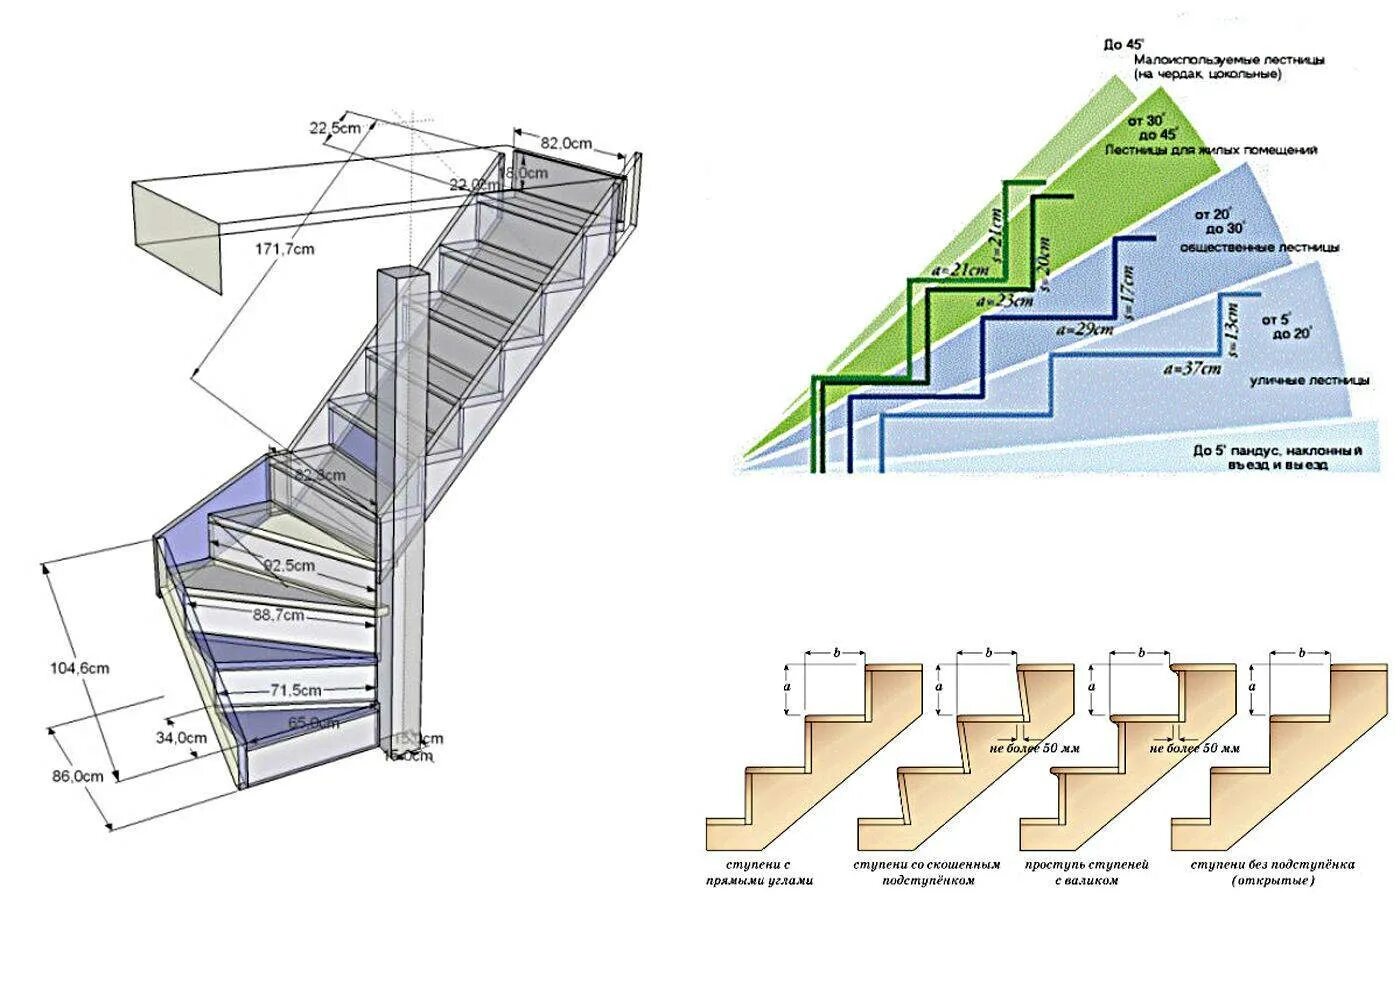 Сколько высота лестницы. Как правильно рассчитать лестницу на 2 этаж. Ступени в лестницы 200 мм ширина. Маршевая лестница 60 гр шаг ступеней. Как рассчитать Размеры лестницы на 2 этаж.